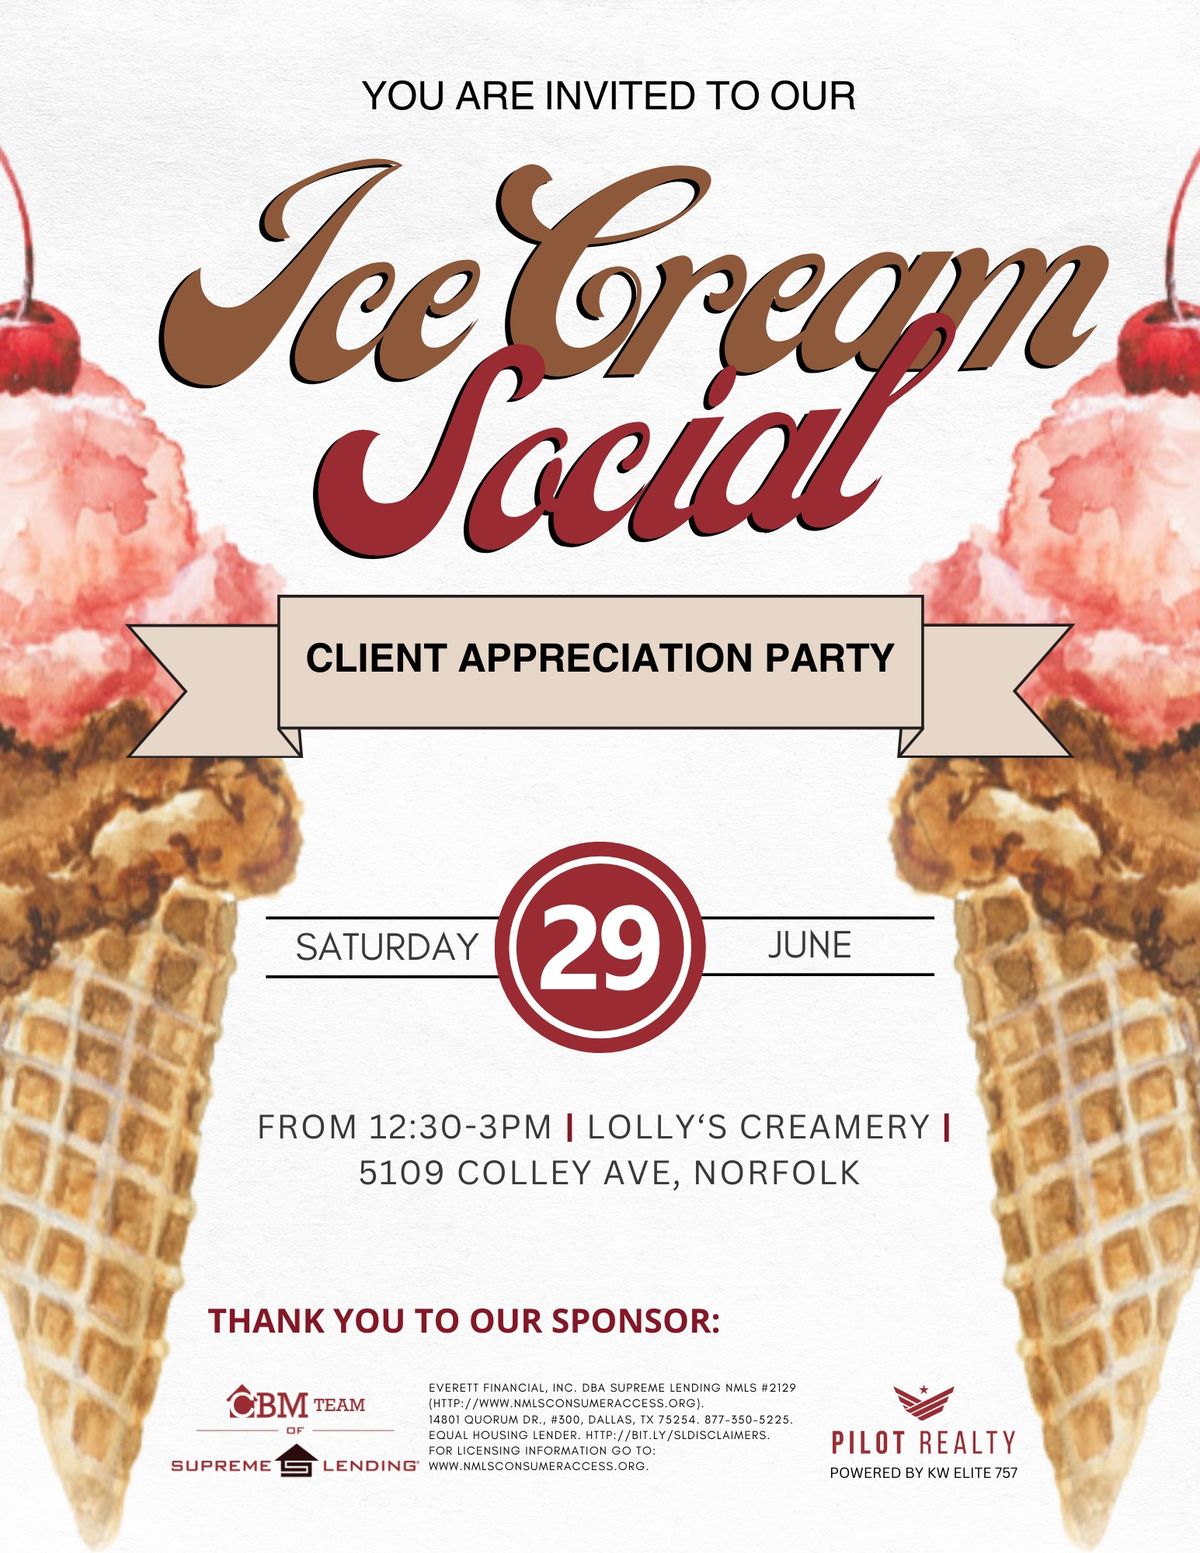 Ice Cream Social Client Appreciation Party